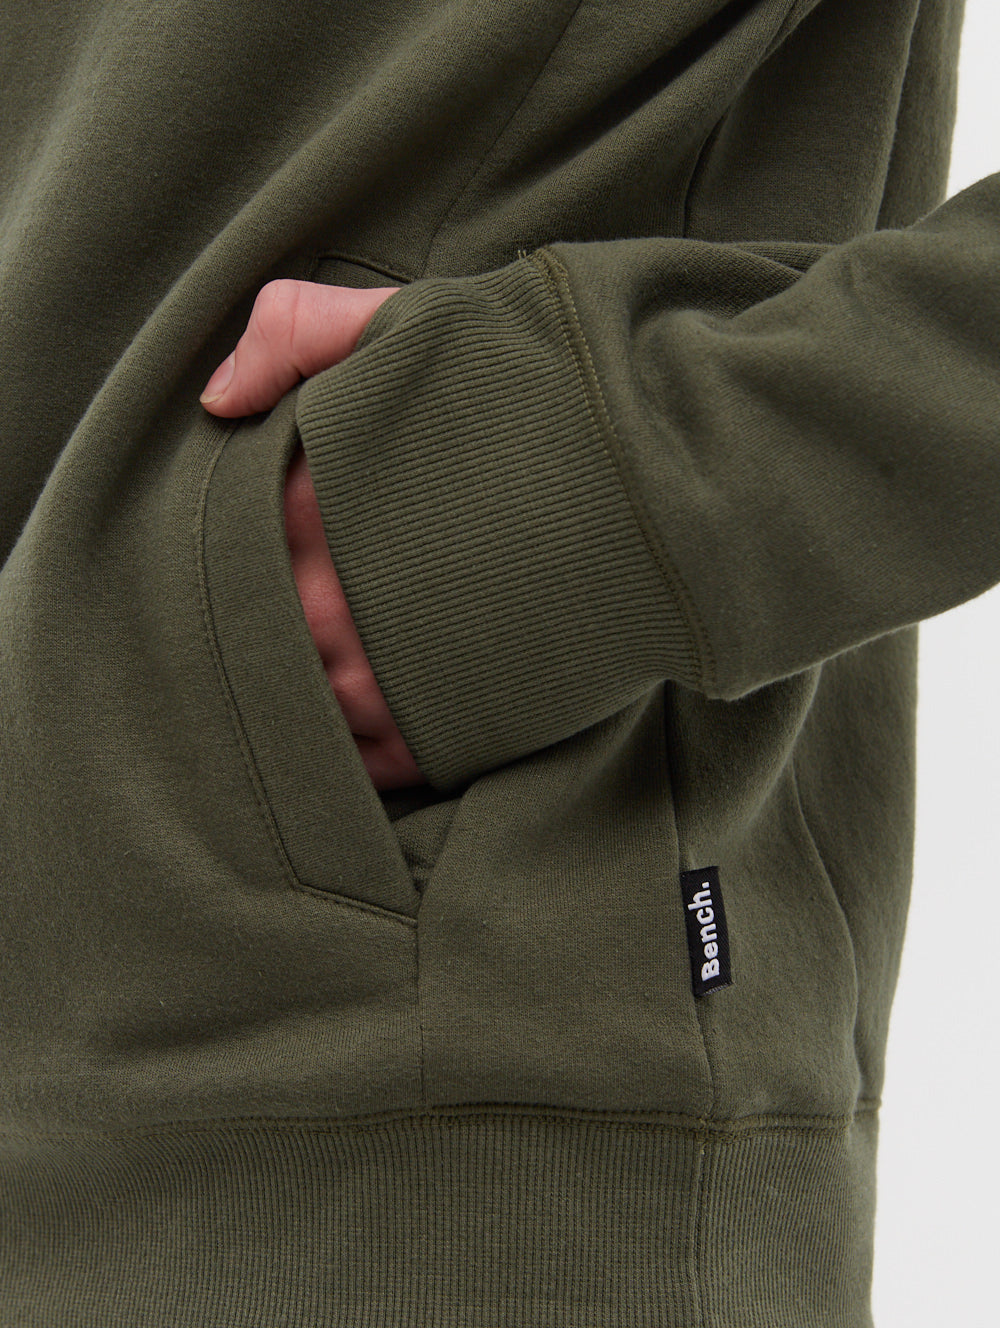 Strike Olive Zipper/Top in Polyester Fleece